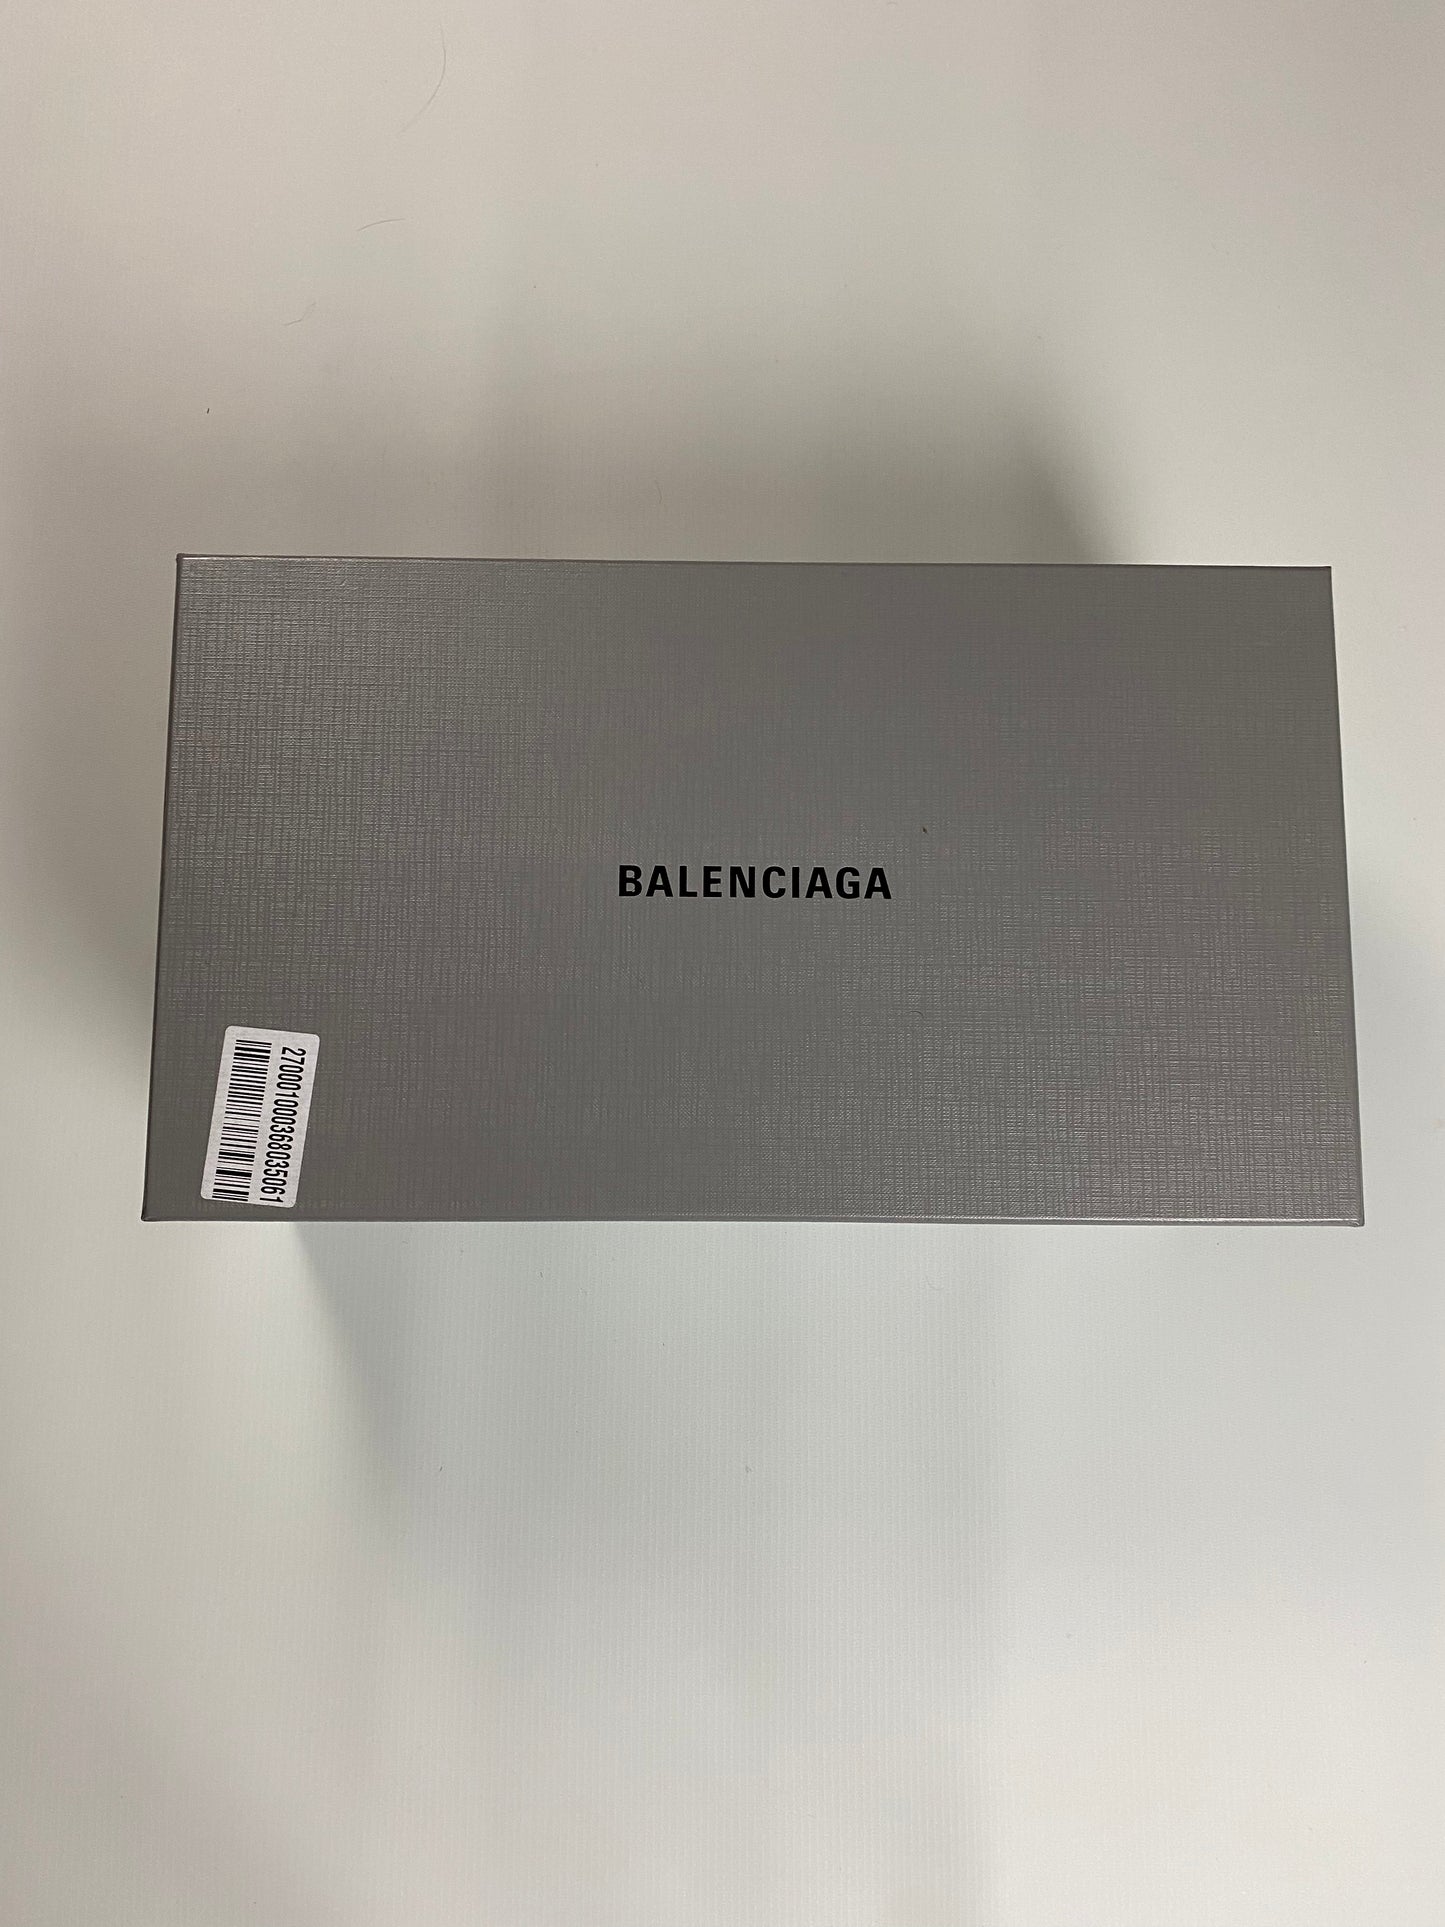 Balenciaga Space shoes in Silver SZ:42